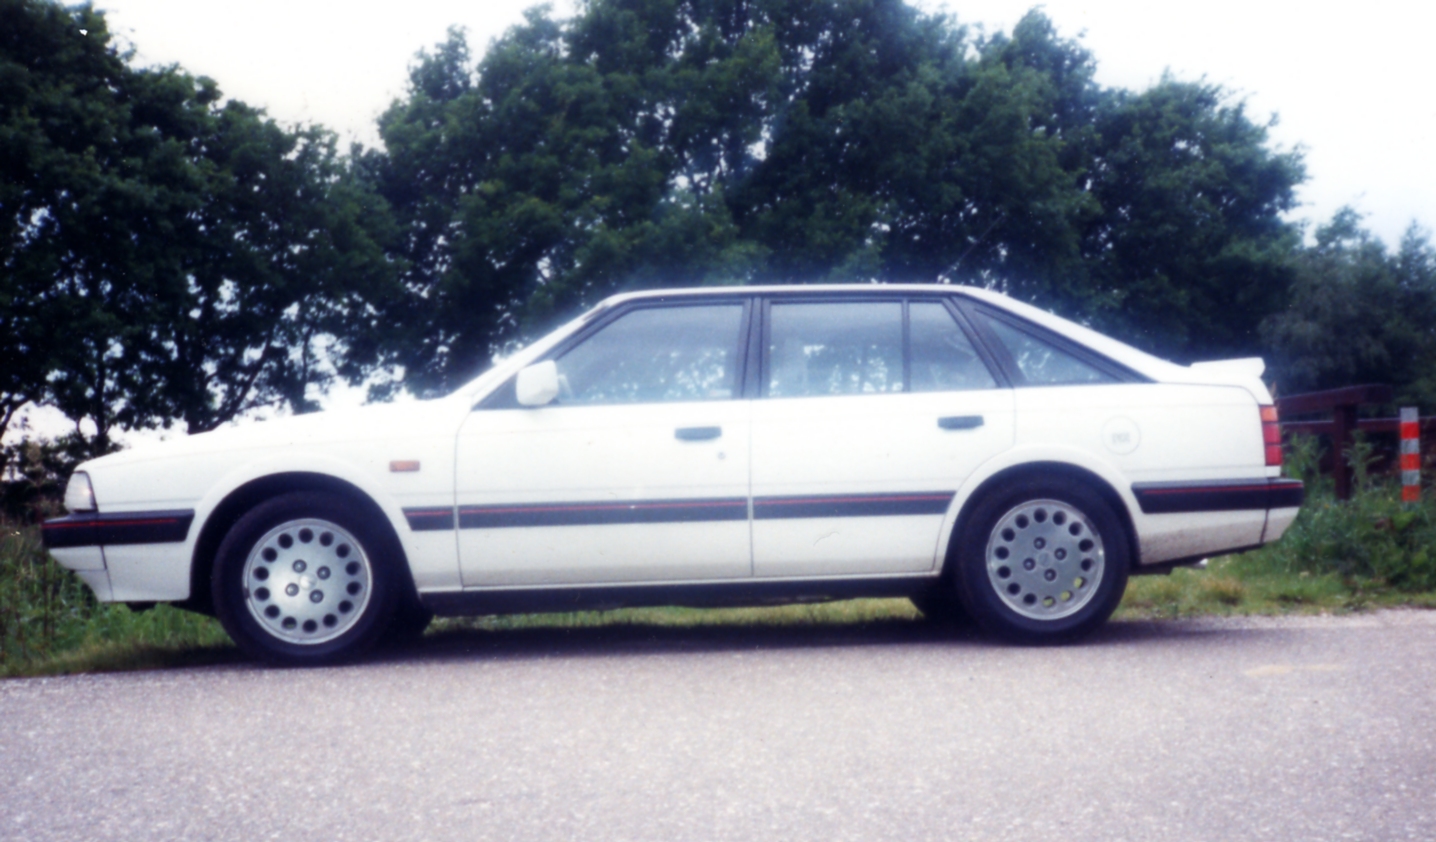 Mazda 626 HB GT (1987) | Flickr - Photo Sharing!